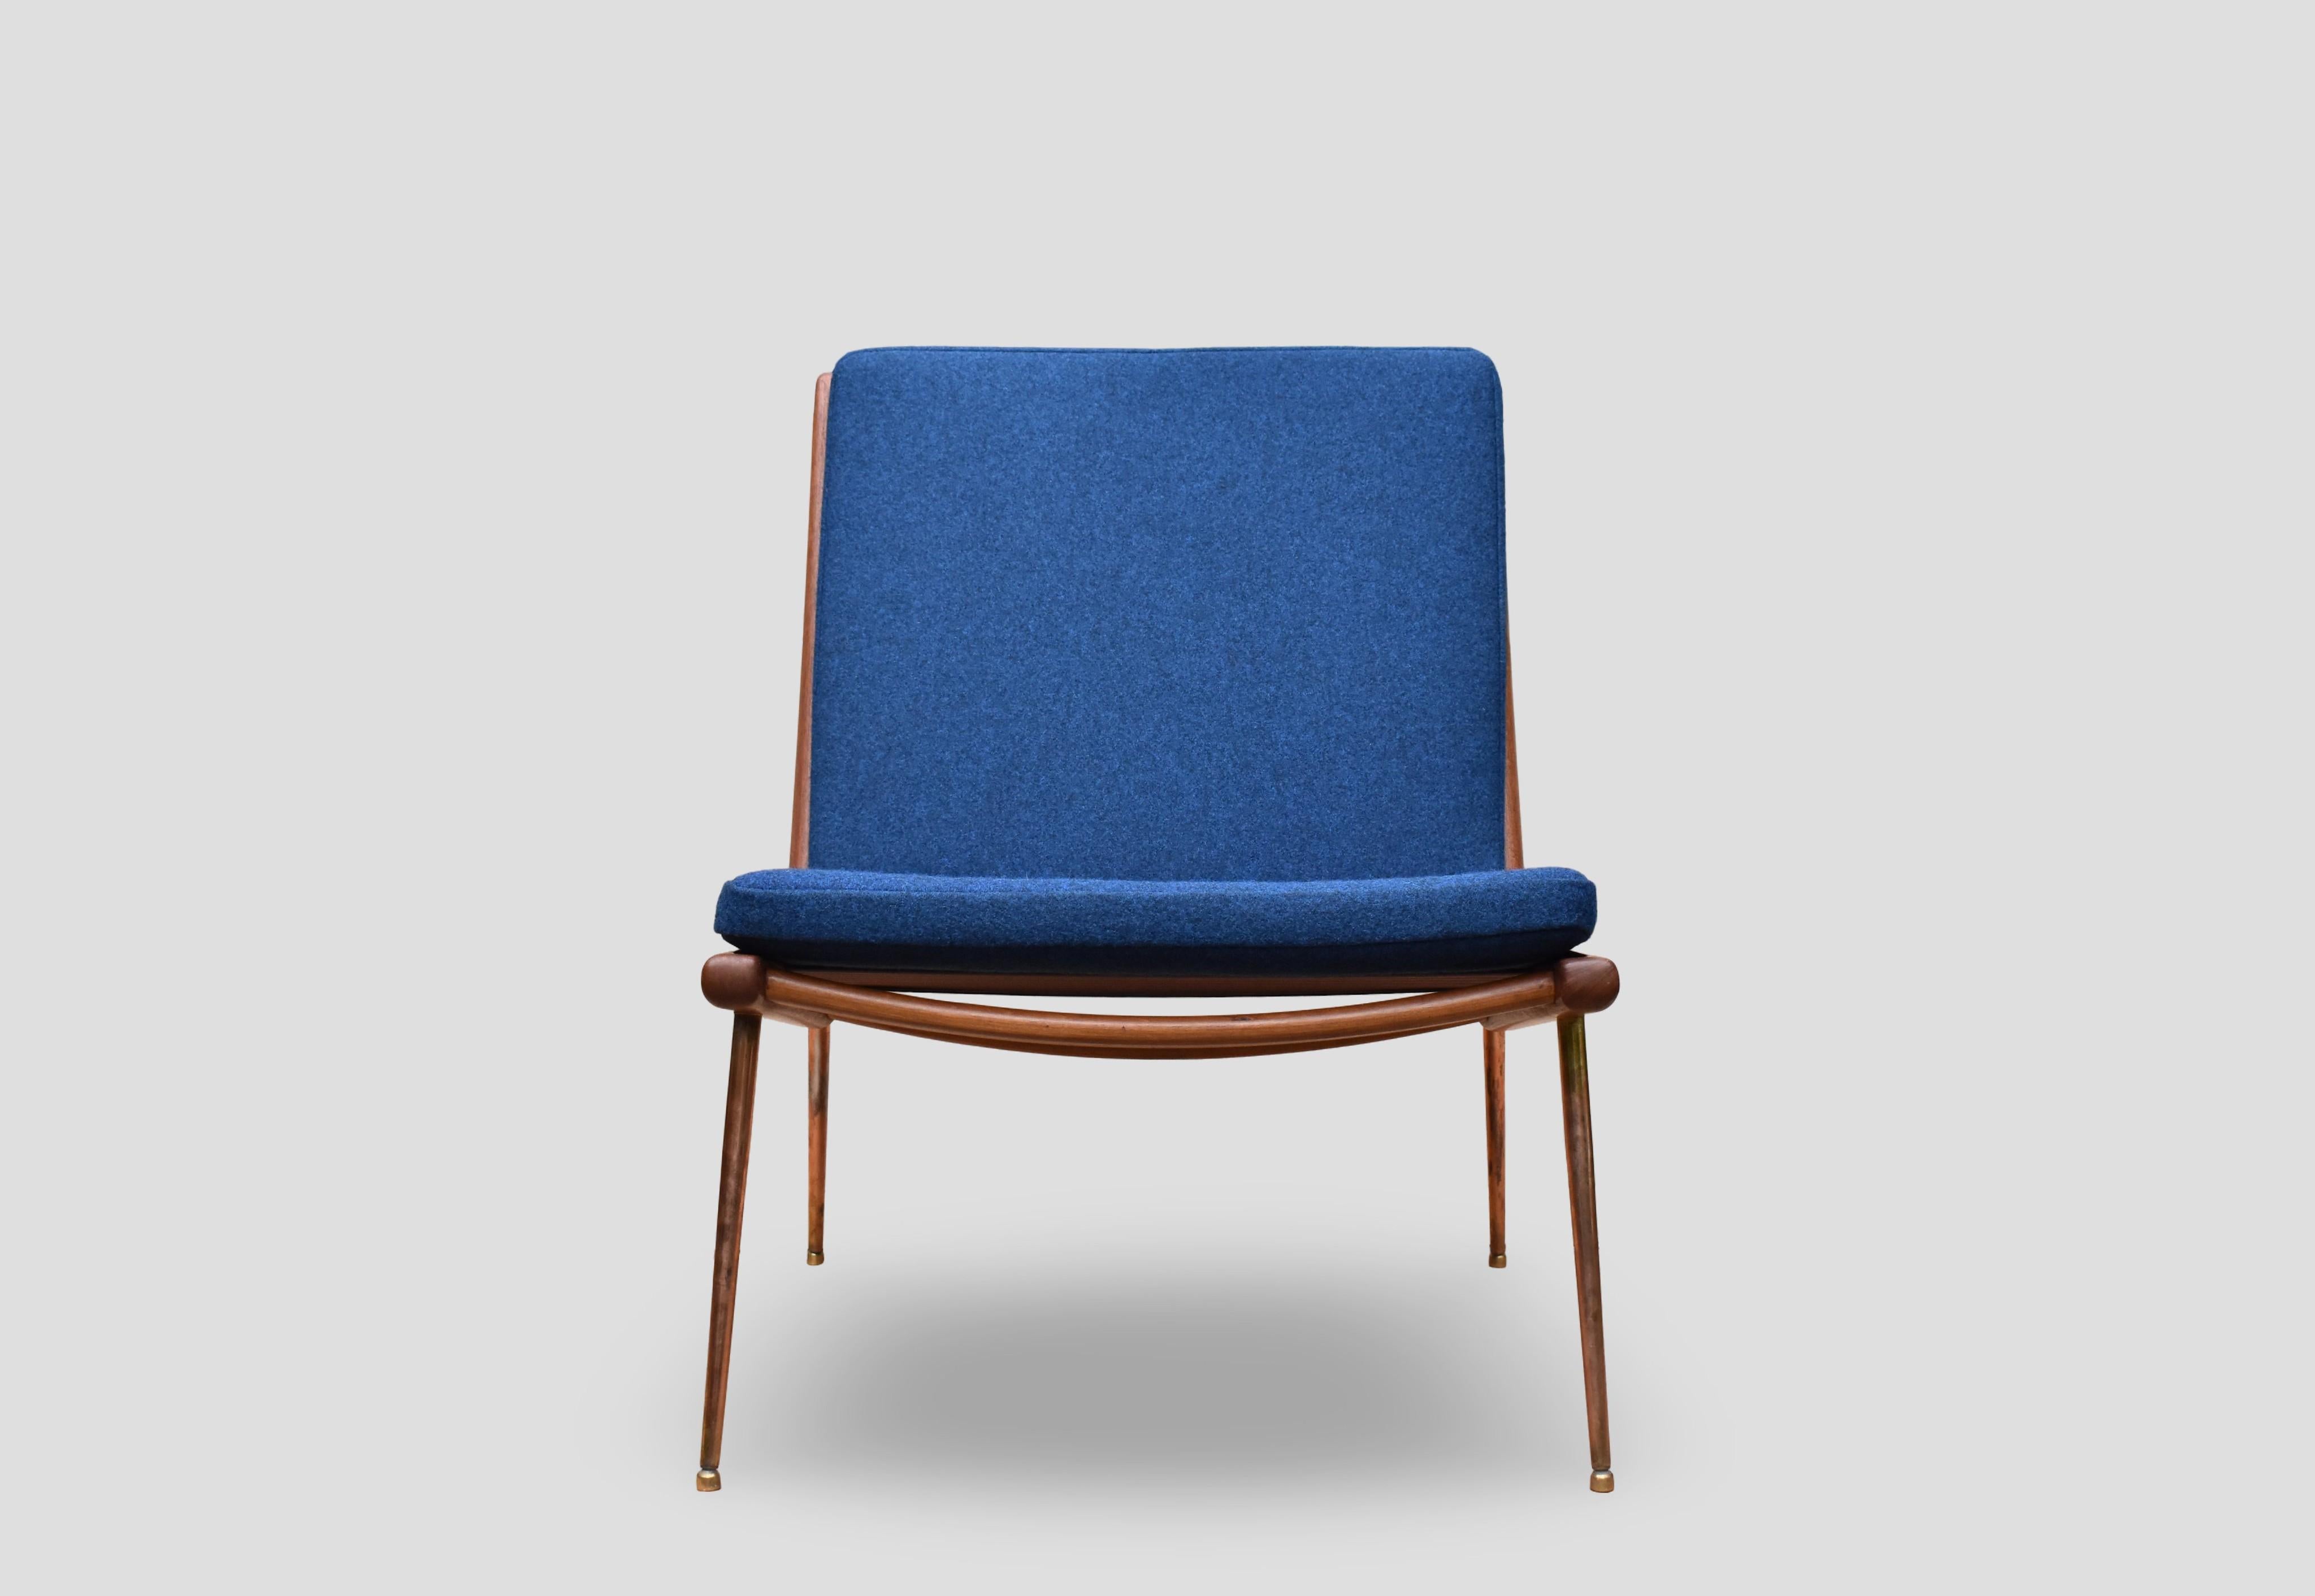 Conçue par les architectes Peter Hvidt et Orla Molgaard Nielsen en 1954, la chaise Boomerang est l'une des plus élégantes de la période du milieu du siècle.

Souvent d'origine plus italienne que danoise, le cadre magnifiquement ouvragé repose sur de